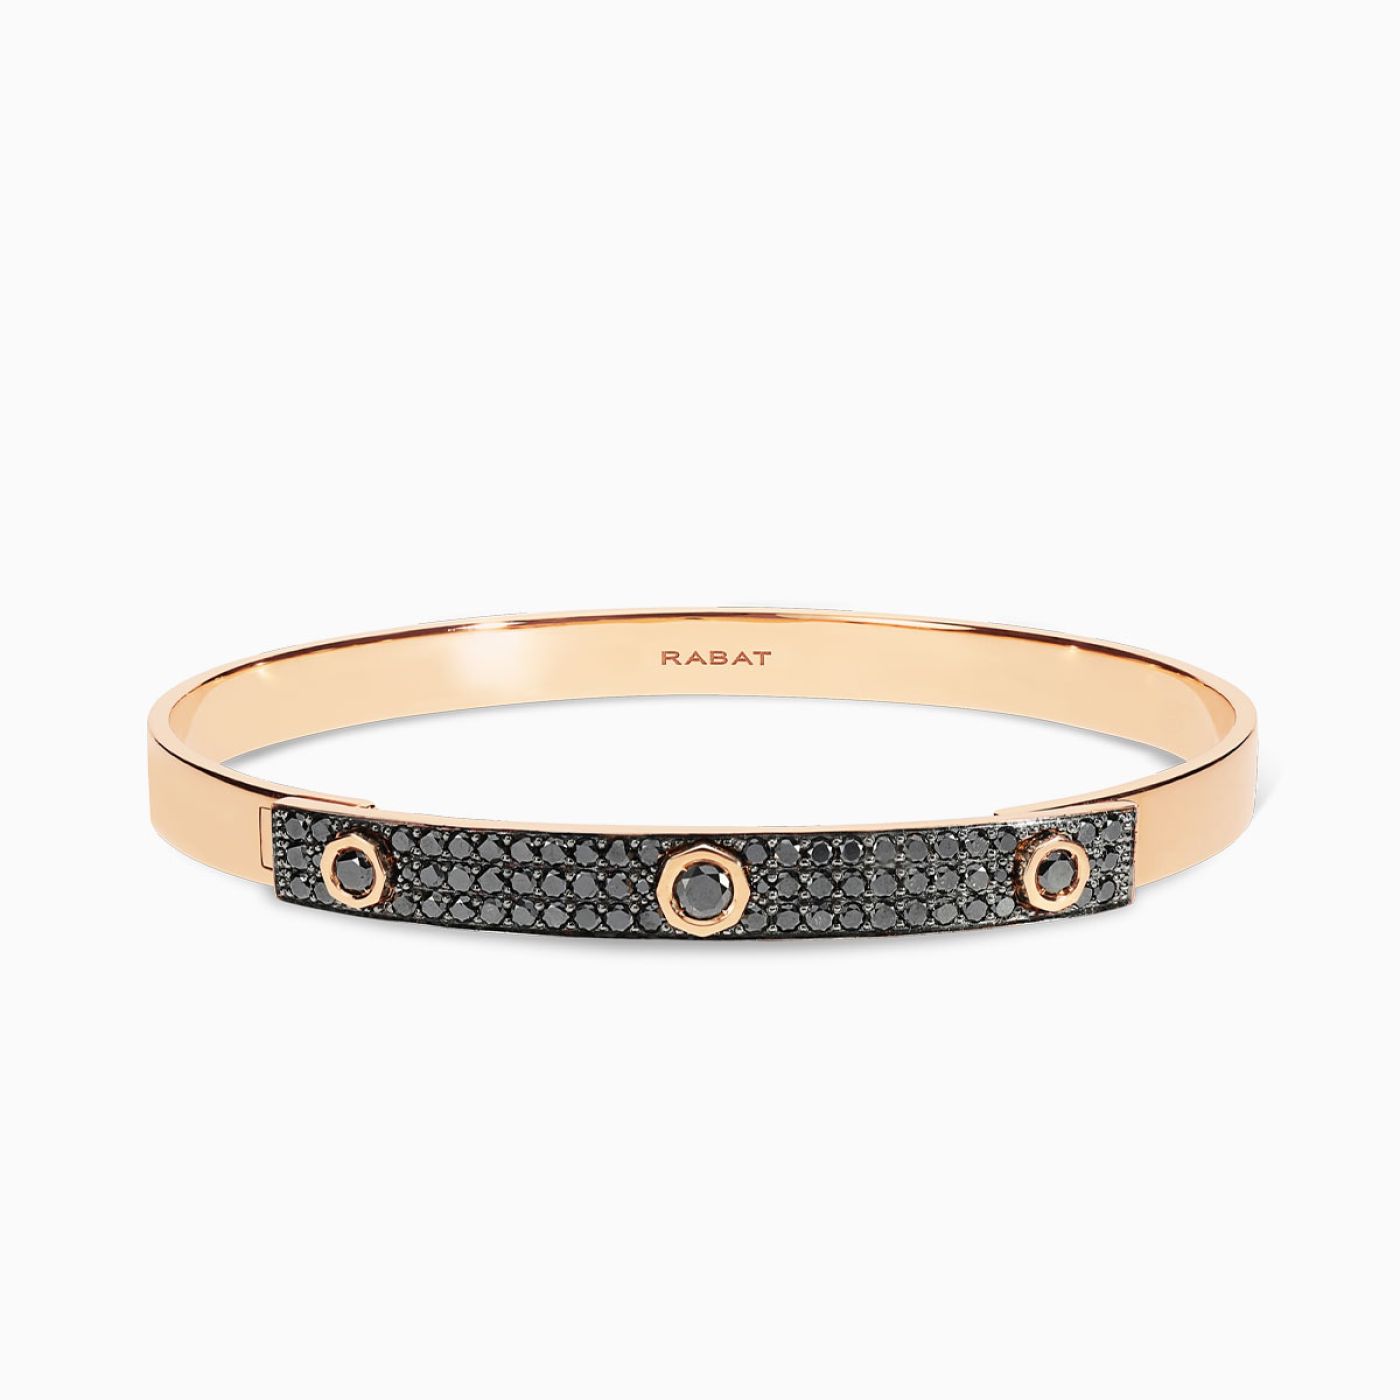 Rose gold bracelet with black diamond pavé